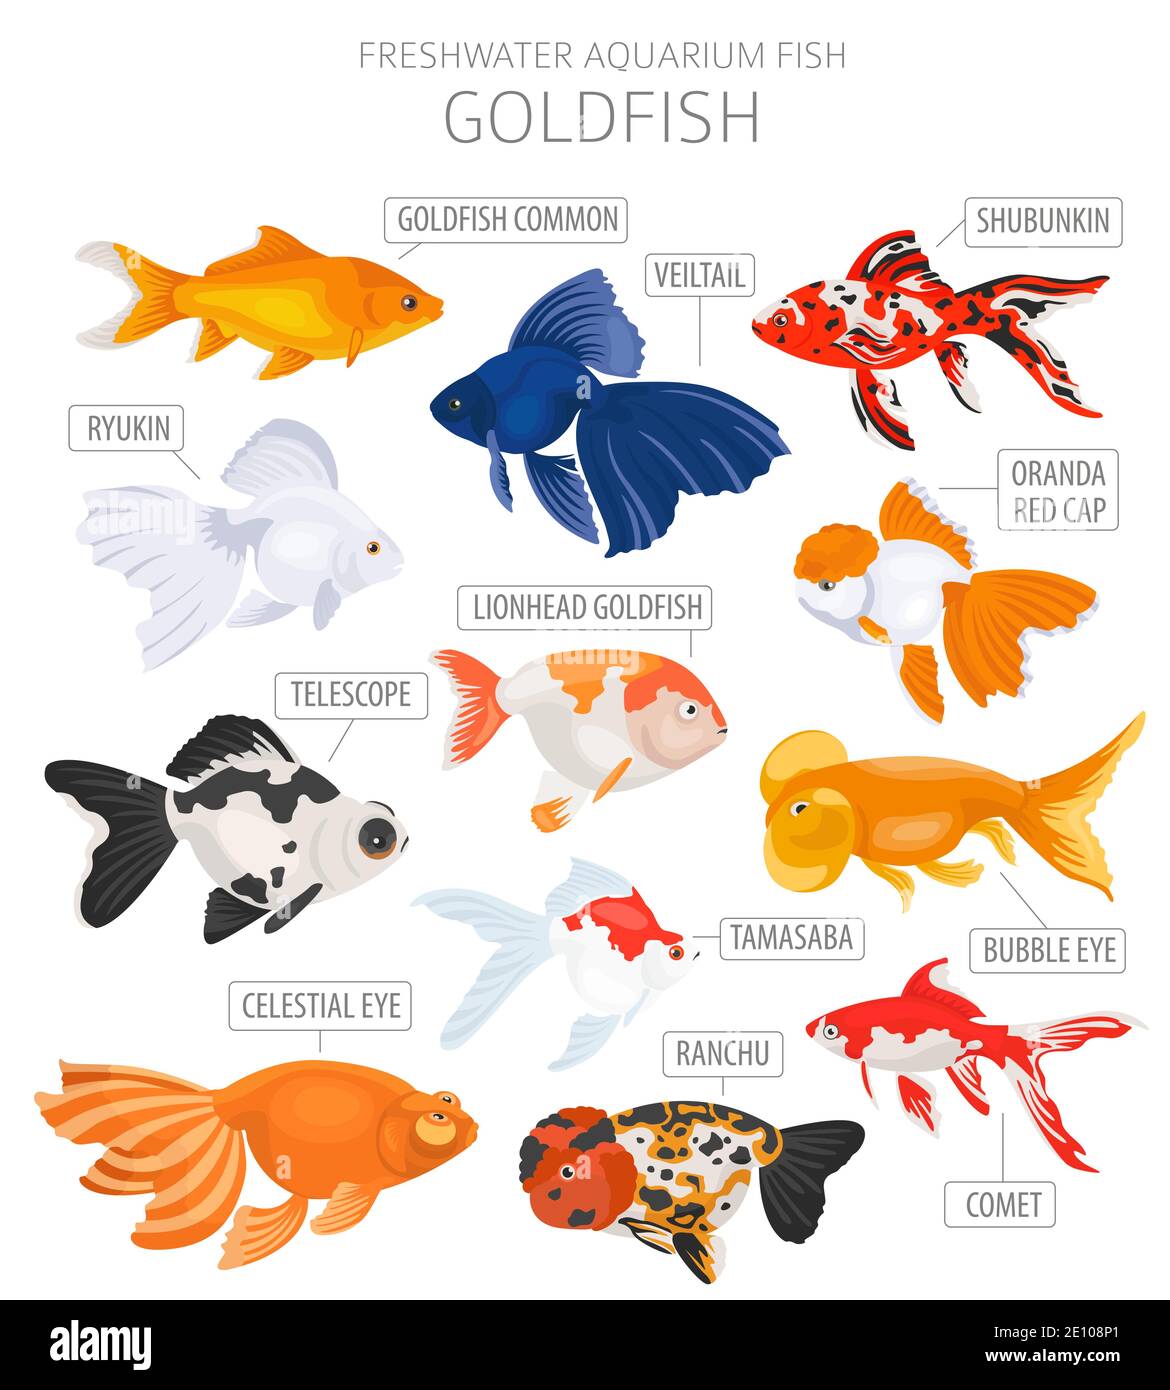 Goldfish. Freshwater aquarium fish icon set flat style isolated on white.  Vector illustration Stock Vector